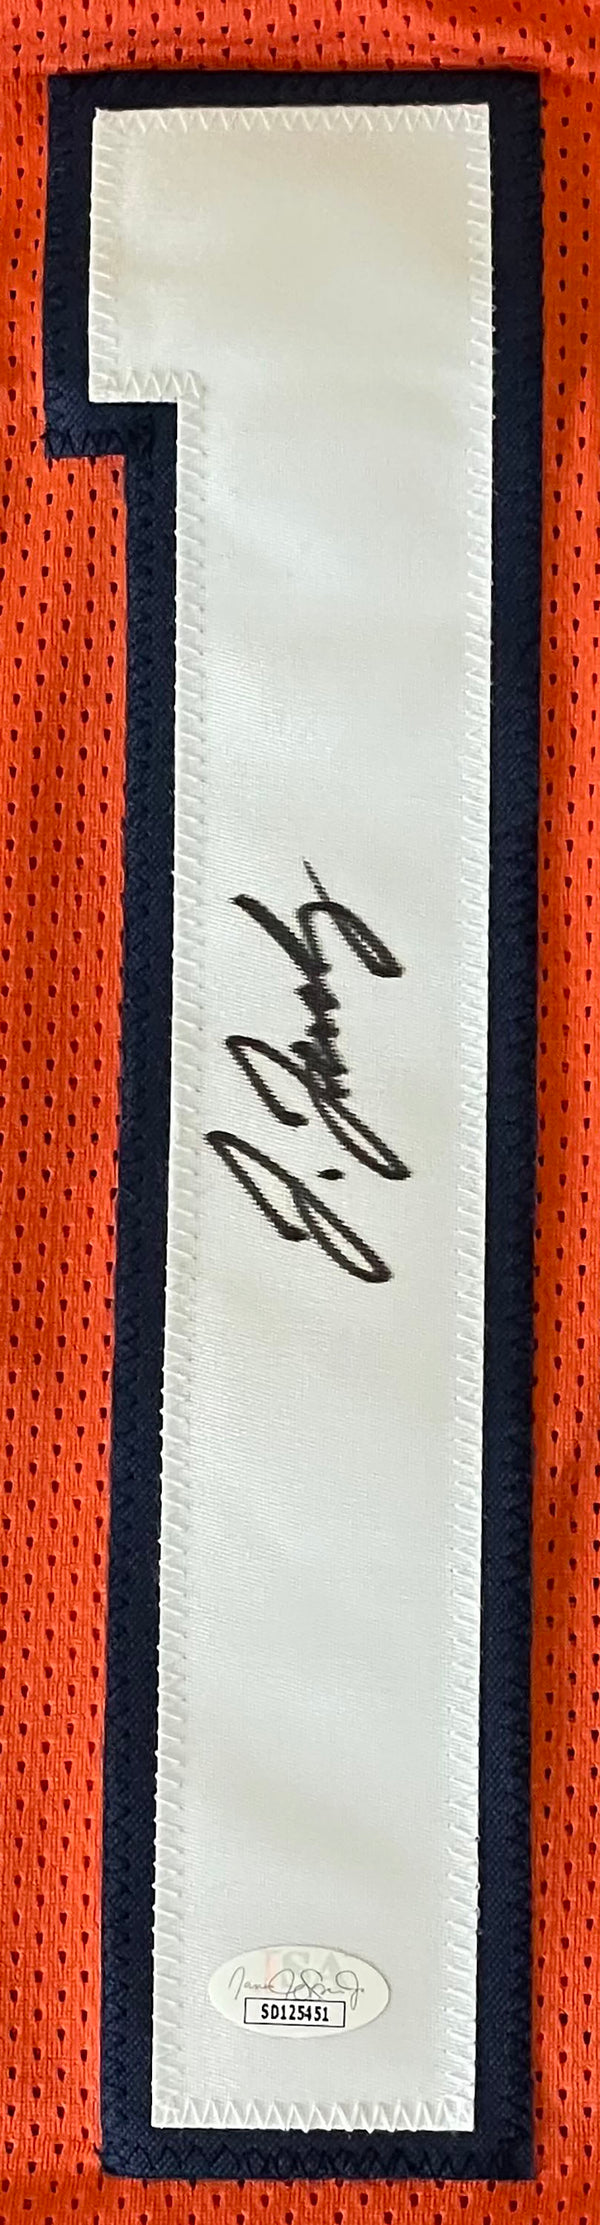 Jerry Jeudy Autographed Denver Broncos Custom Jersey (JSA)